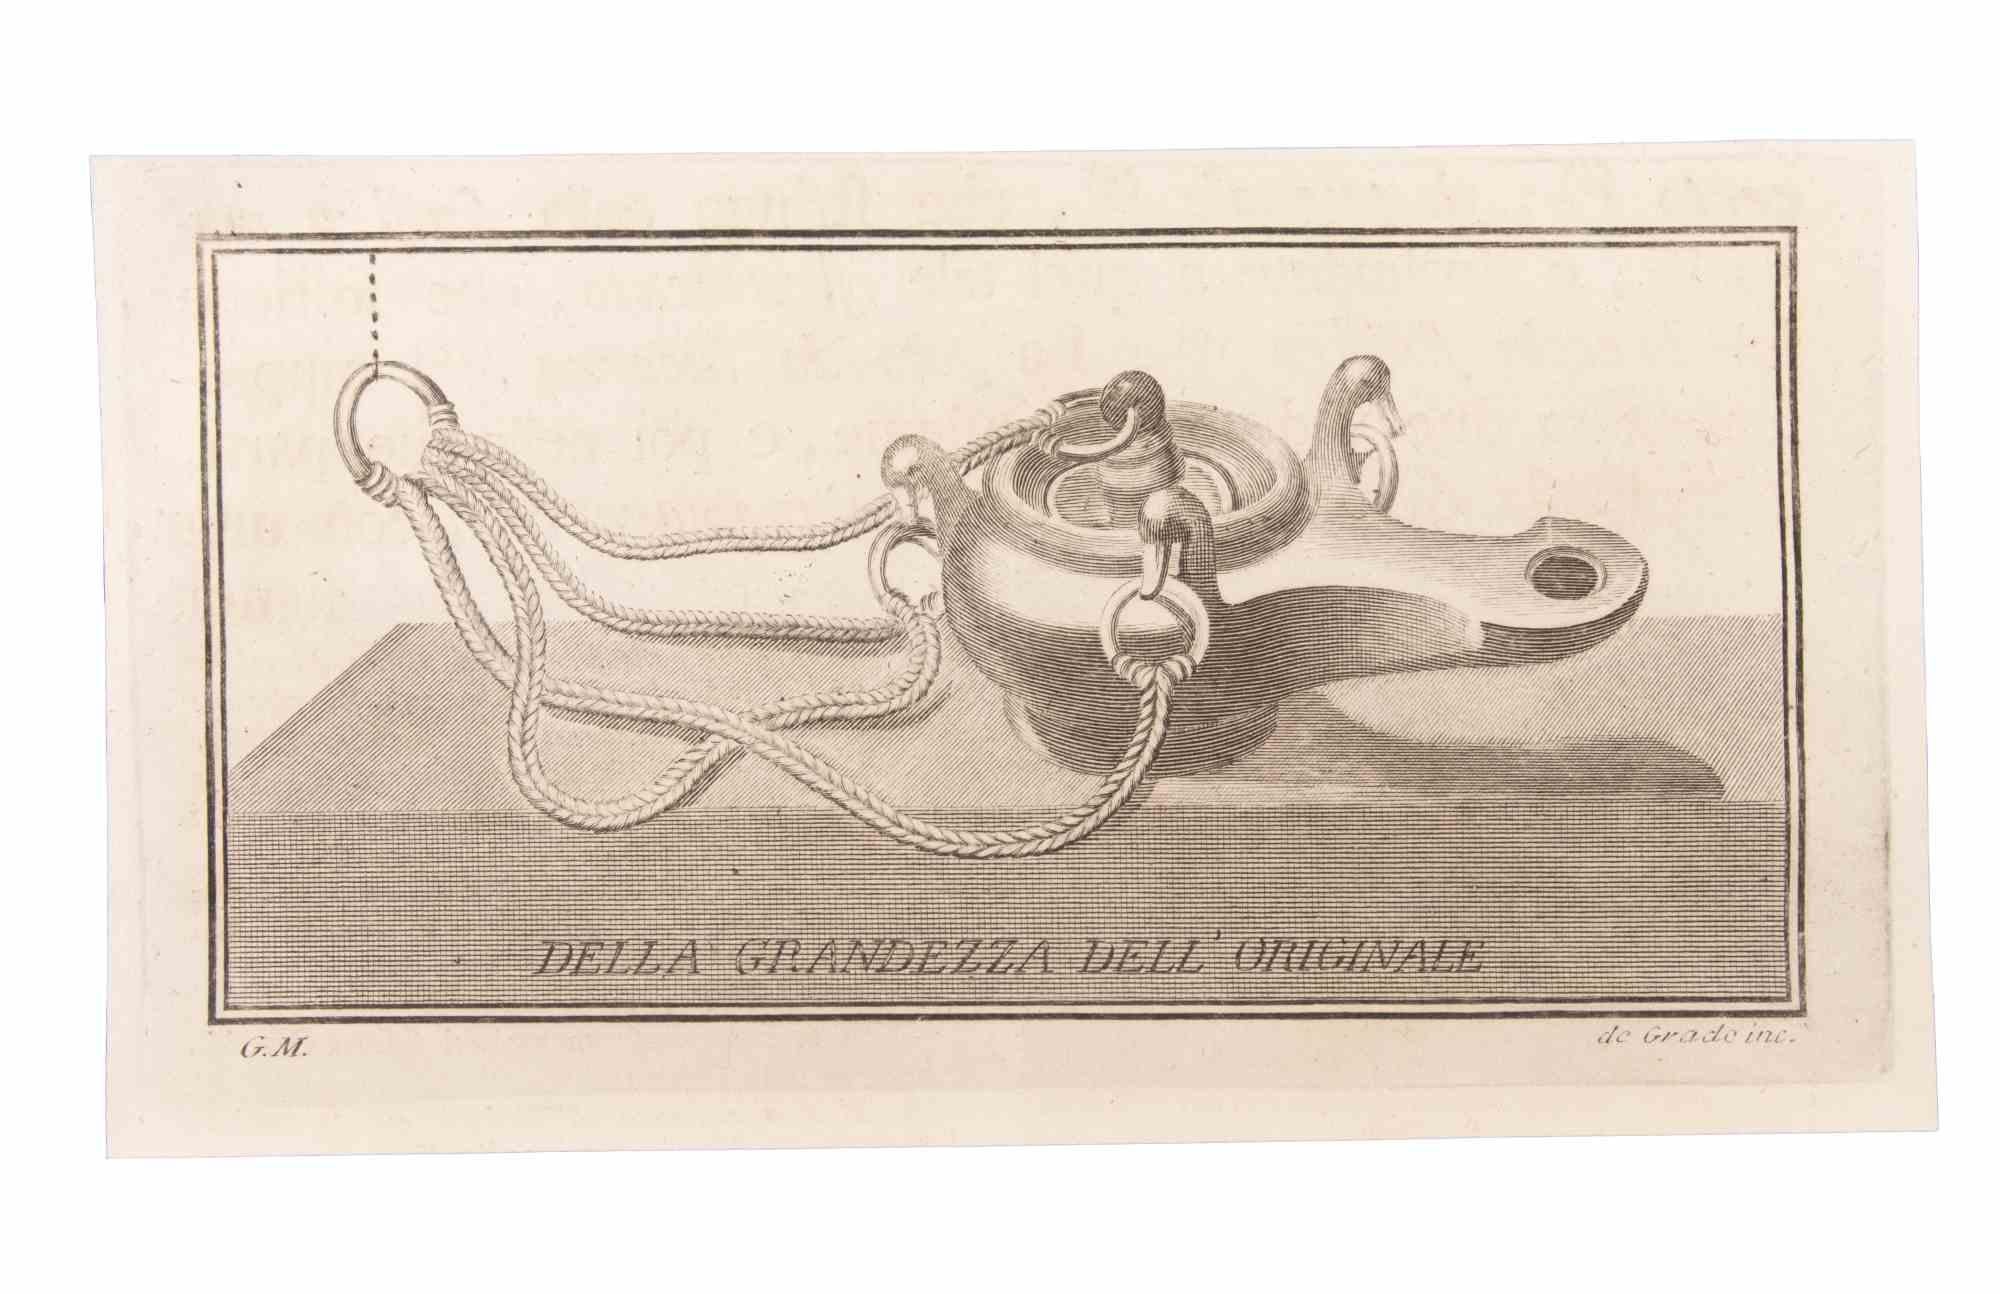 Öllampe zum Aufhängen ist eine Radierung realisiert von  Filippo de Grado (1705-1780).

Die Radierung gehört zu der Druckserie "Antiquities of Herculaneum Exposed" (Originaltitel: "Le Antichità di Ercolano Esposte"), einem achtbändigen Band mit